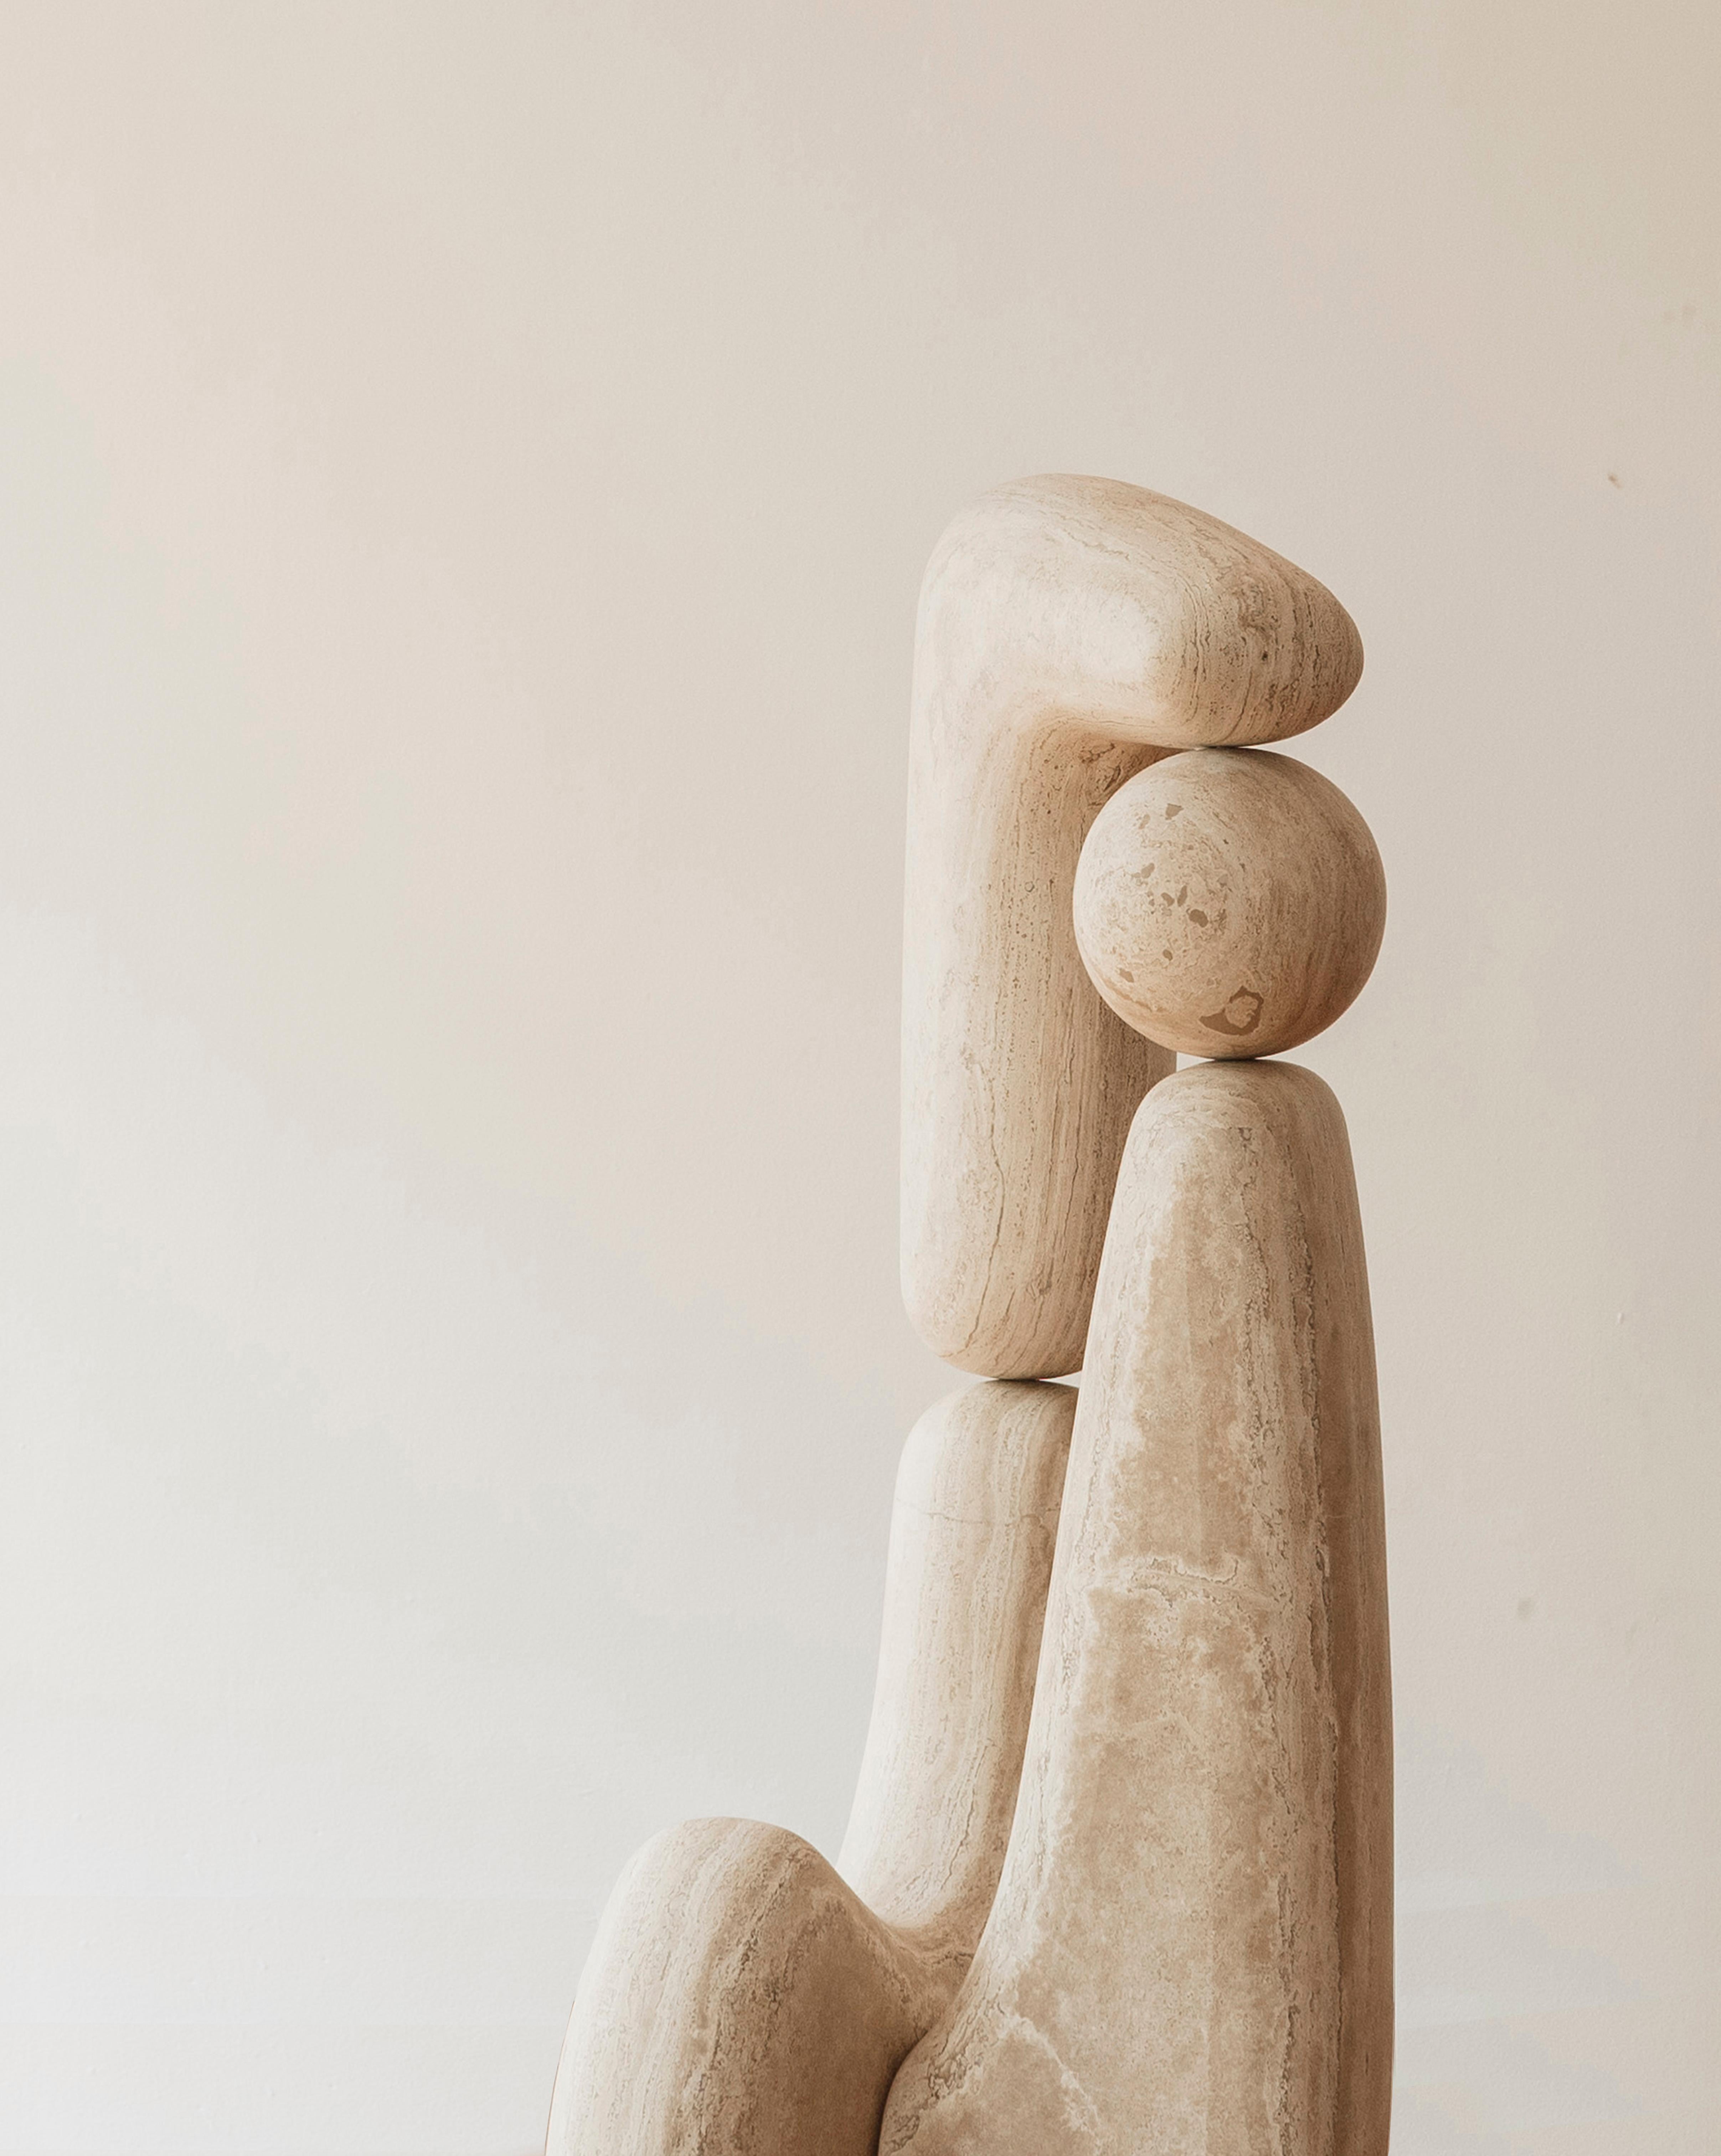 Rebeca Cors (México,1988). Le travail de CORS oscille entre la sculpture et la fonction, étudiant ses limites et ses points de rencontre. En conséquence, Cors crée des sculptures abstraites et des sculptures utilitaires.

Les compositions